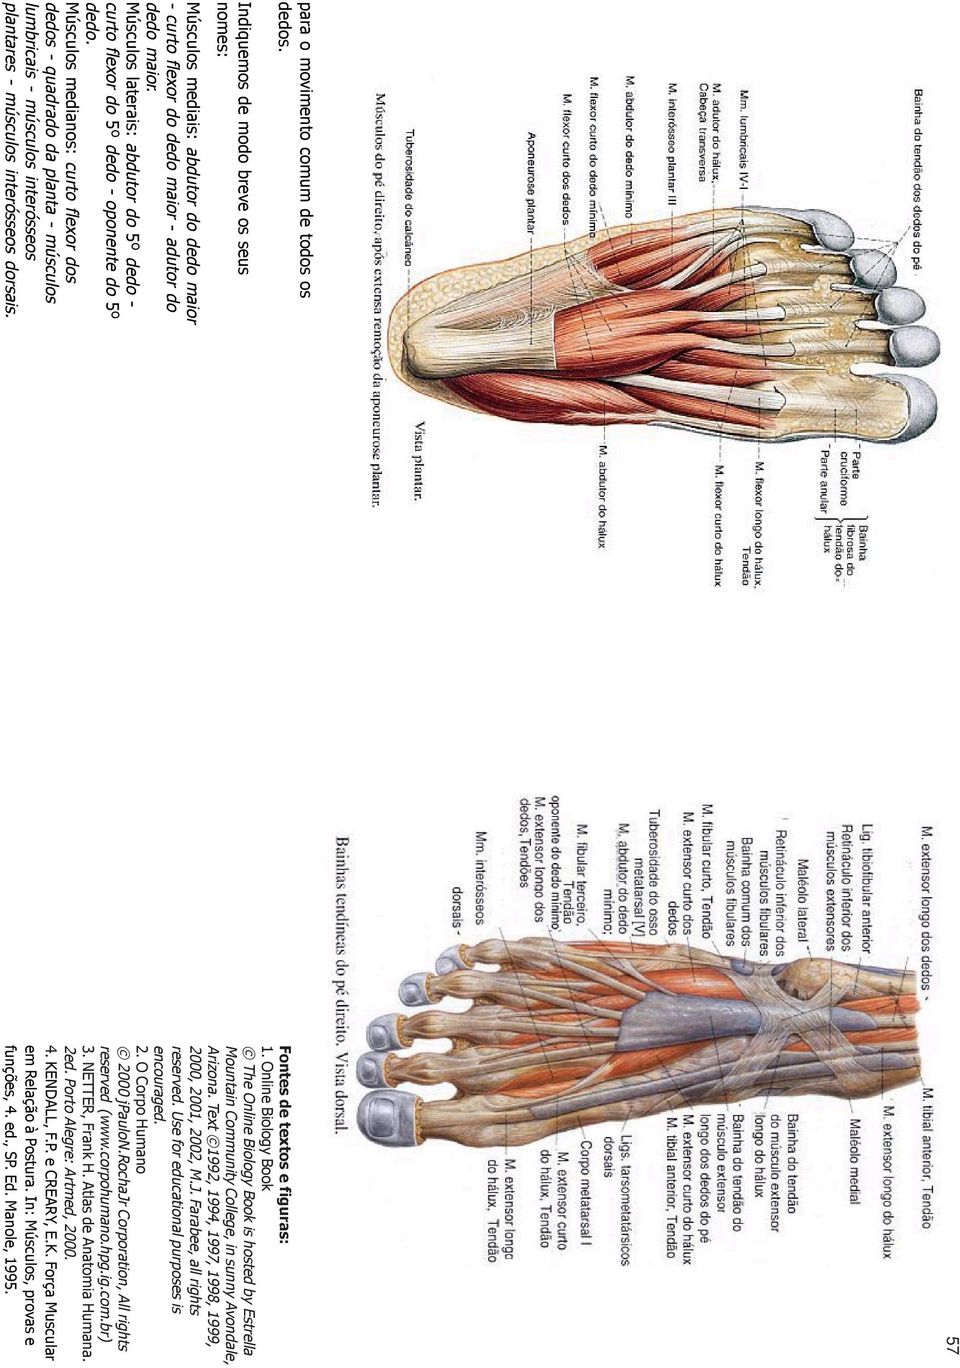 Músculos medianos: curto flexor dos dedos - quadrado da planta - músculos lumbricais - músculos interósseos plantares - músculos interósseos dorsais. 57 Fontes de textos e figuras: 1.